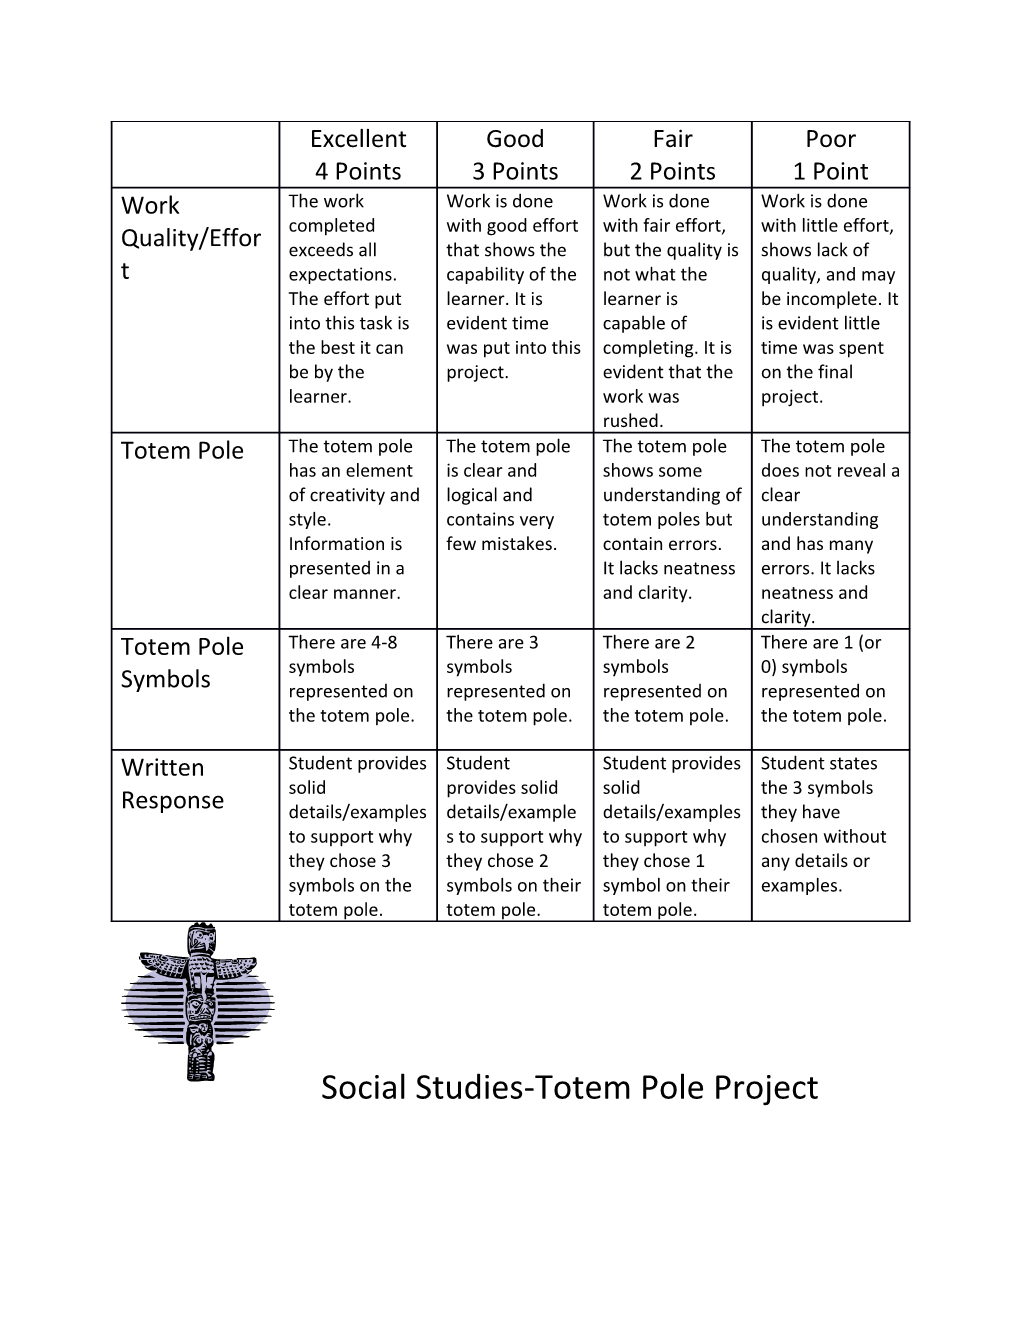 Social Studies-Totem Pole Project